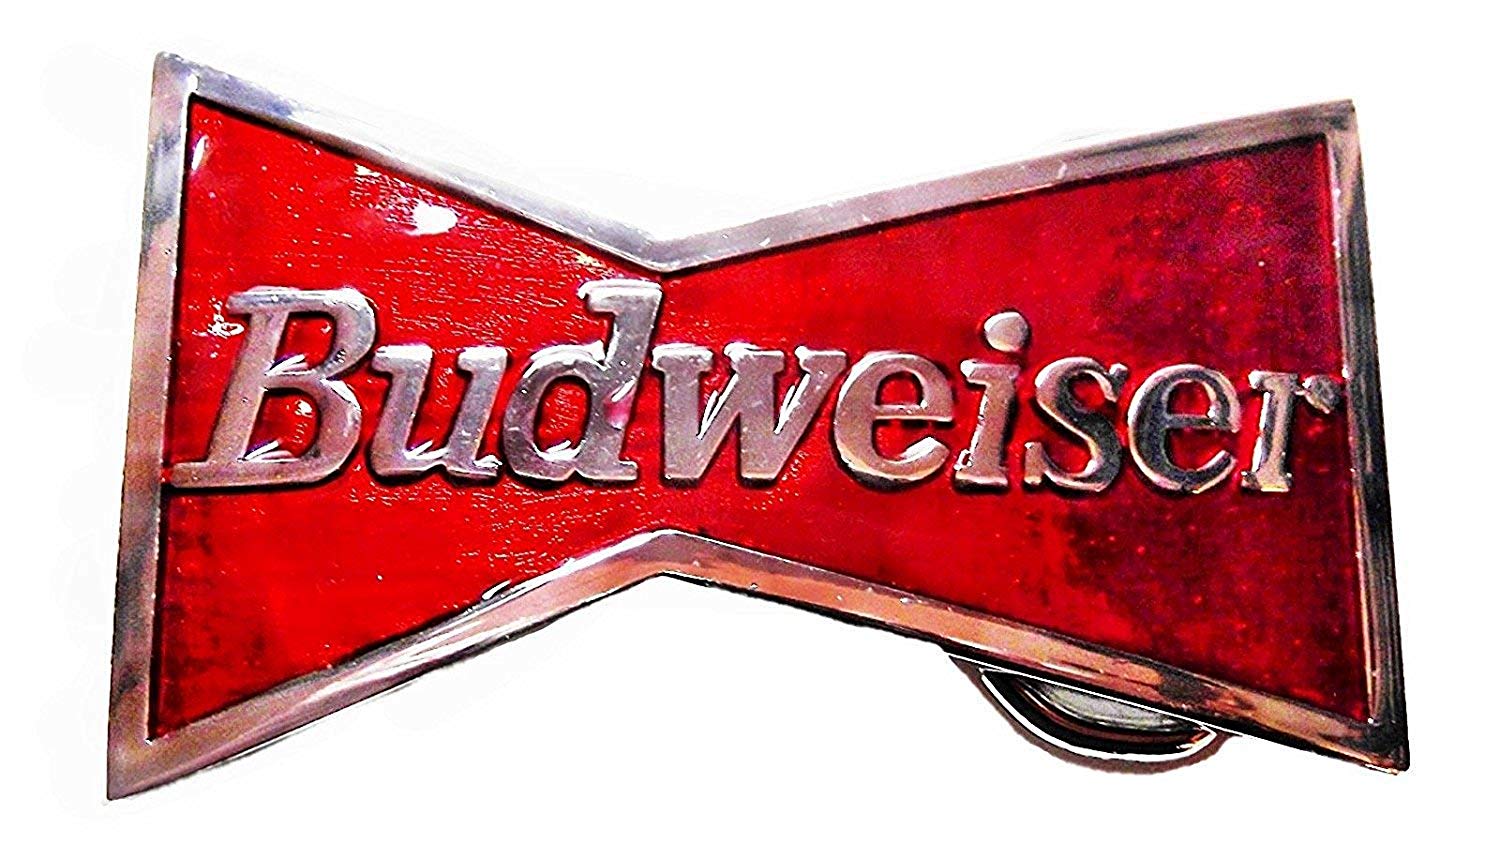 Beers Logo - Budweiser King of Beers Logo Metal/Enamel Belt Buckle Red, Silver